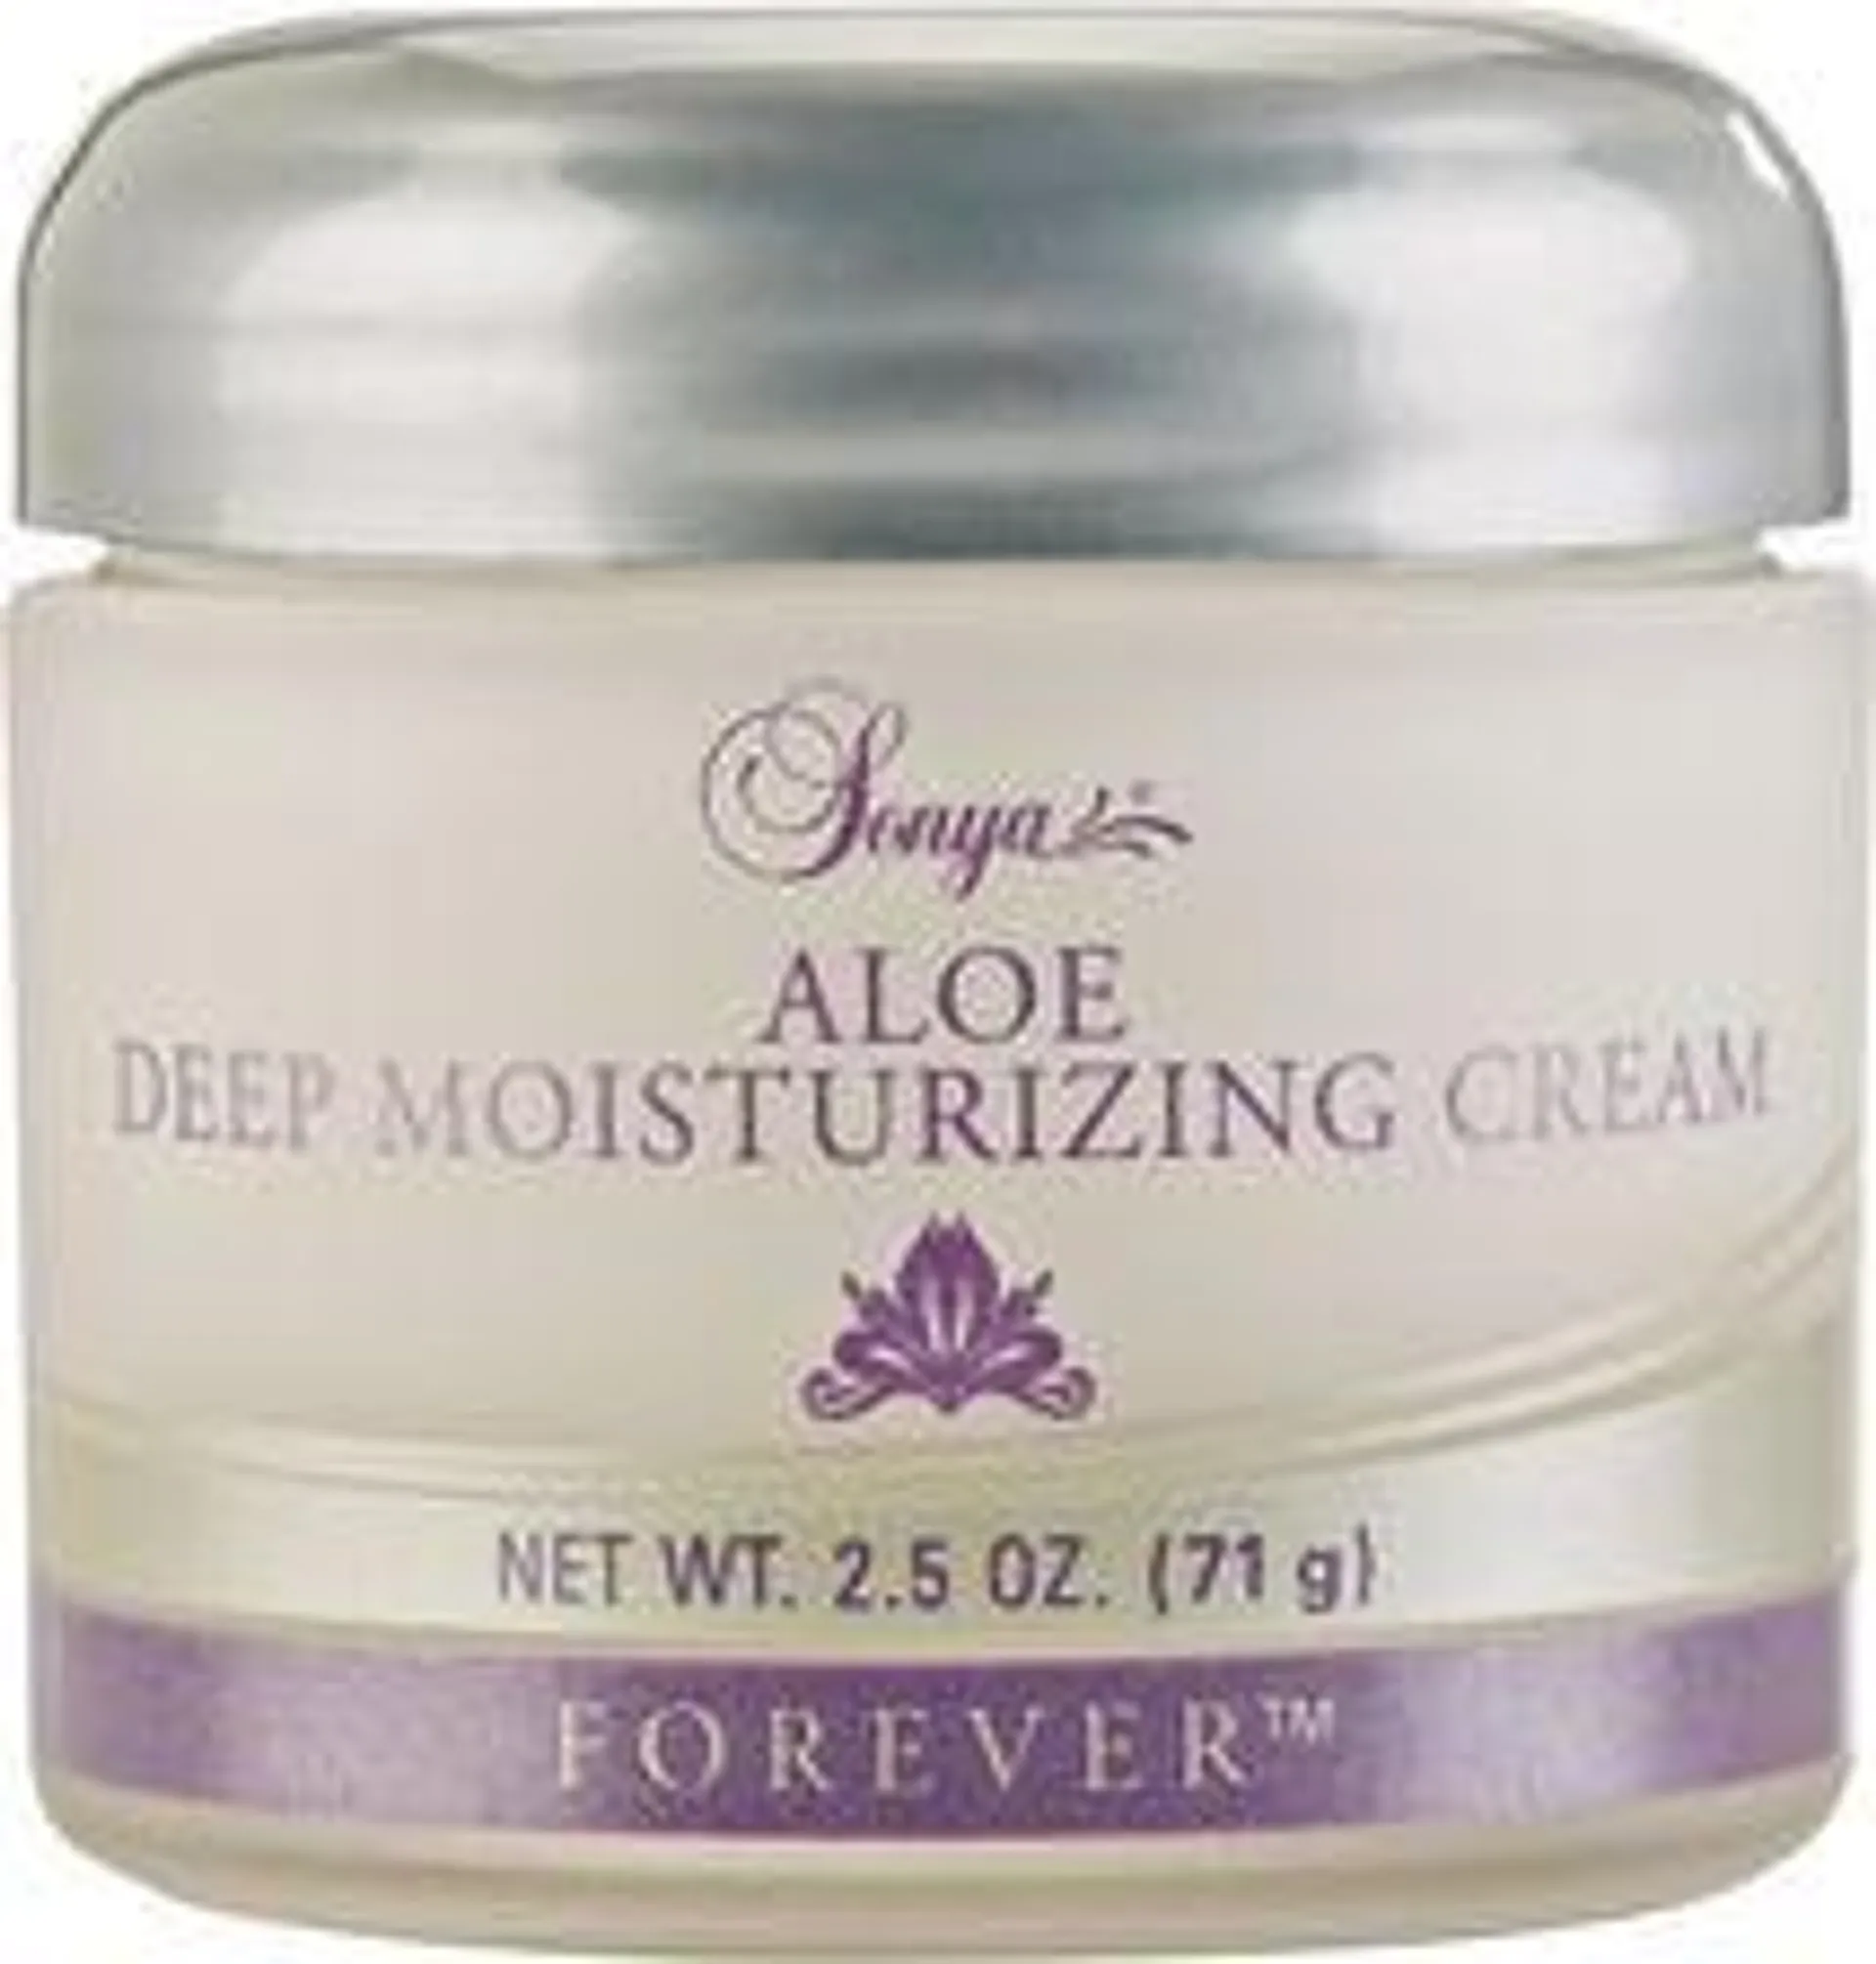 Sonya Aloe Deep Moisturizing Cream - Aloesowy krem nawilżający, 71g